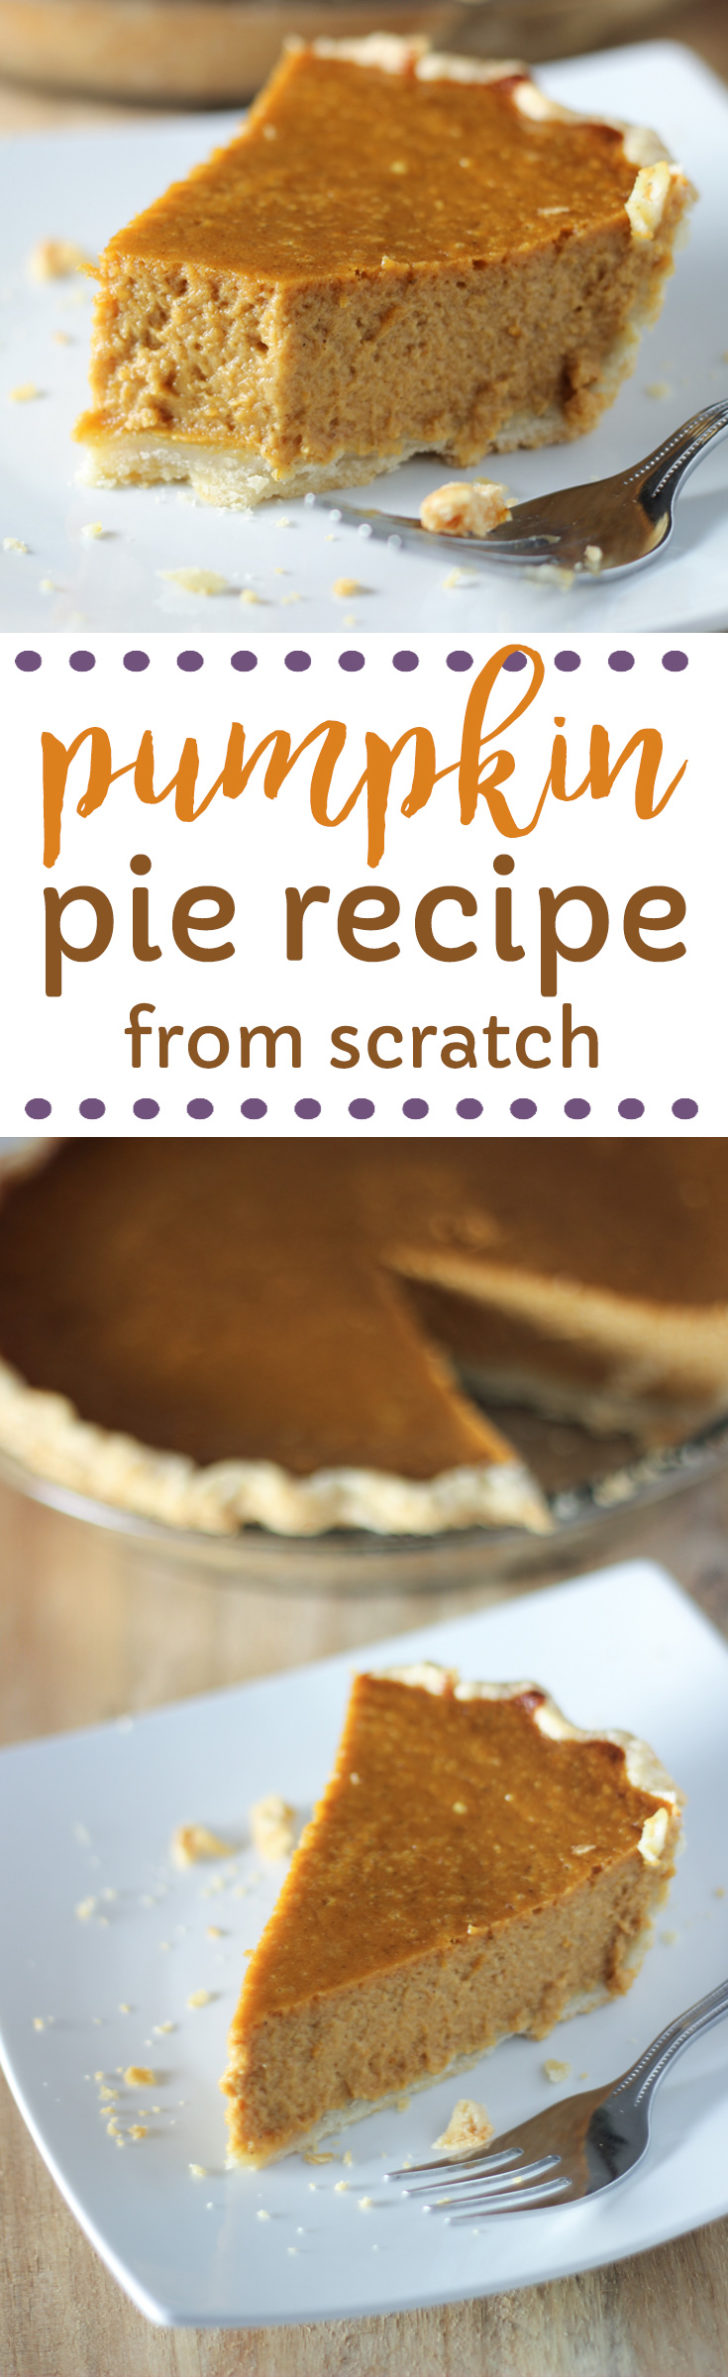 Pumpkin pie from scratch recipe